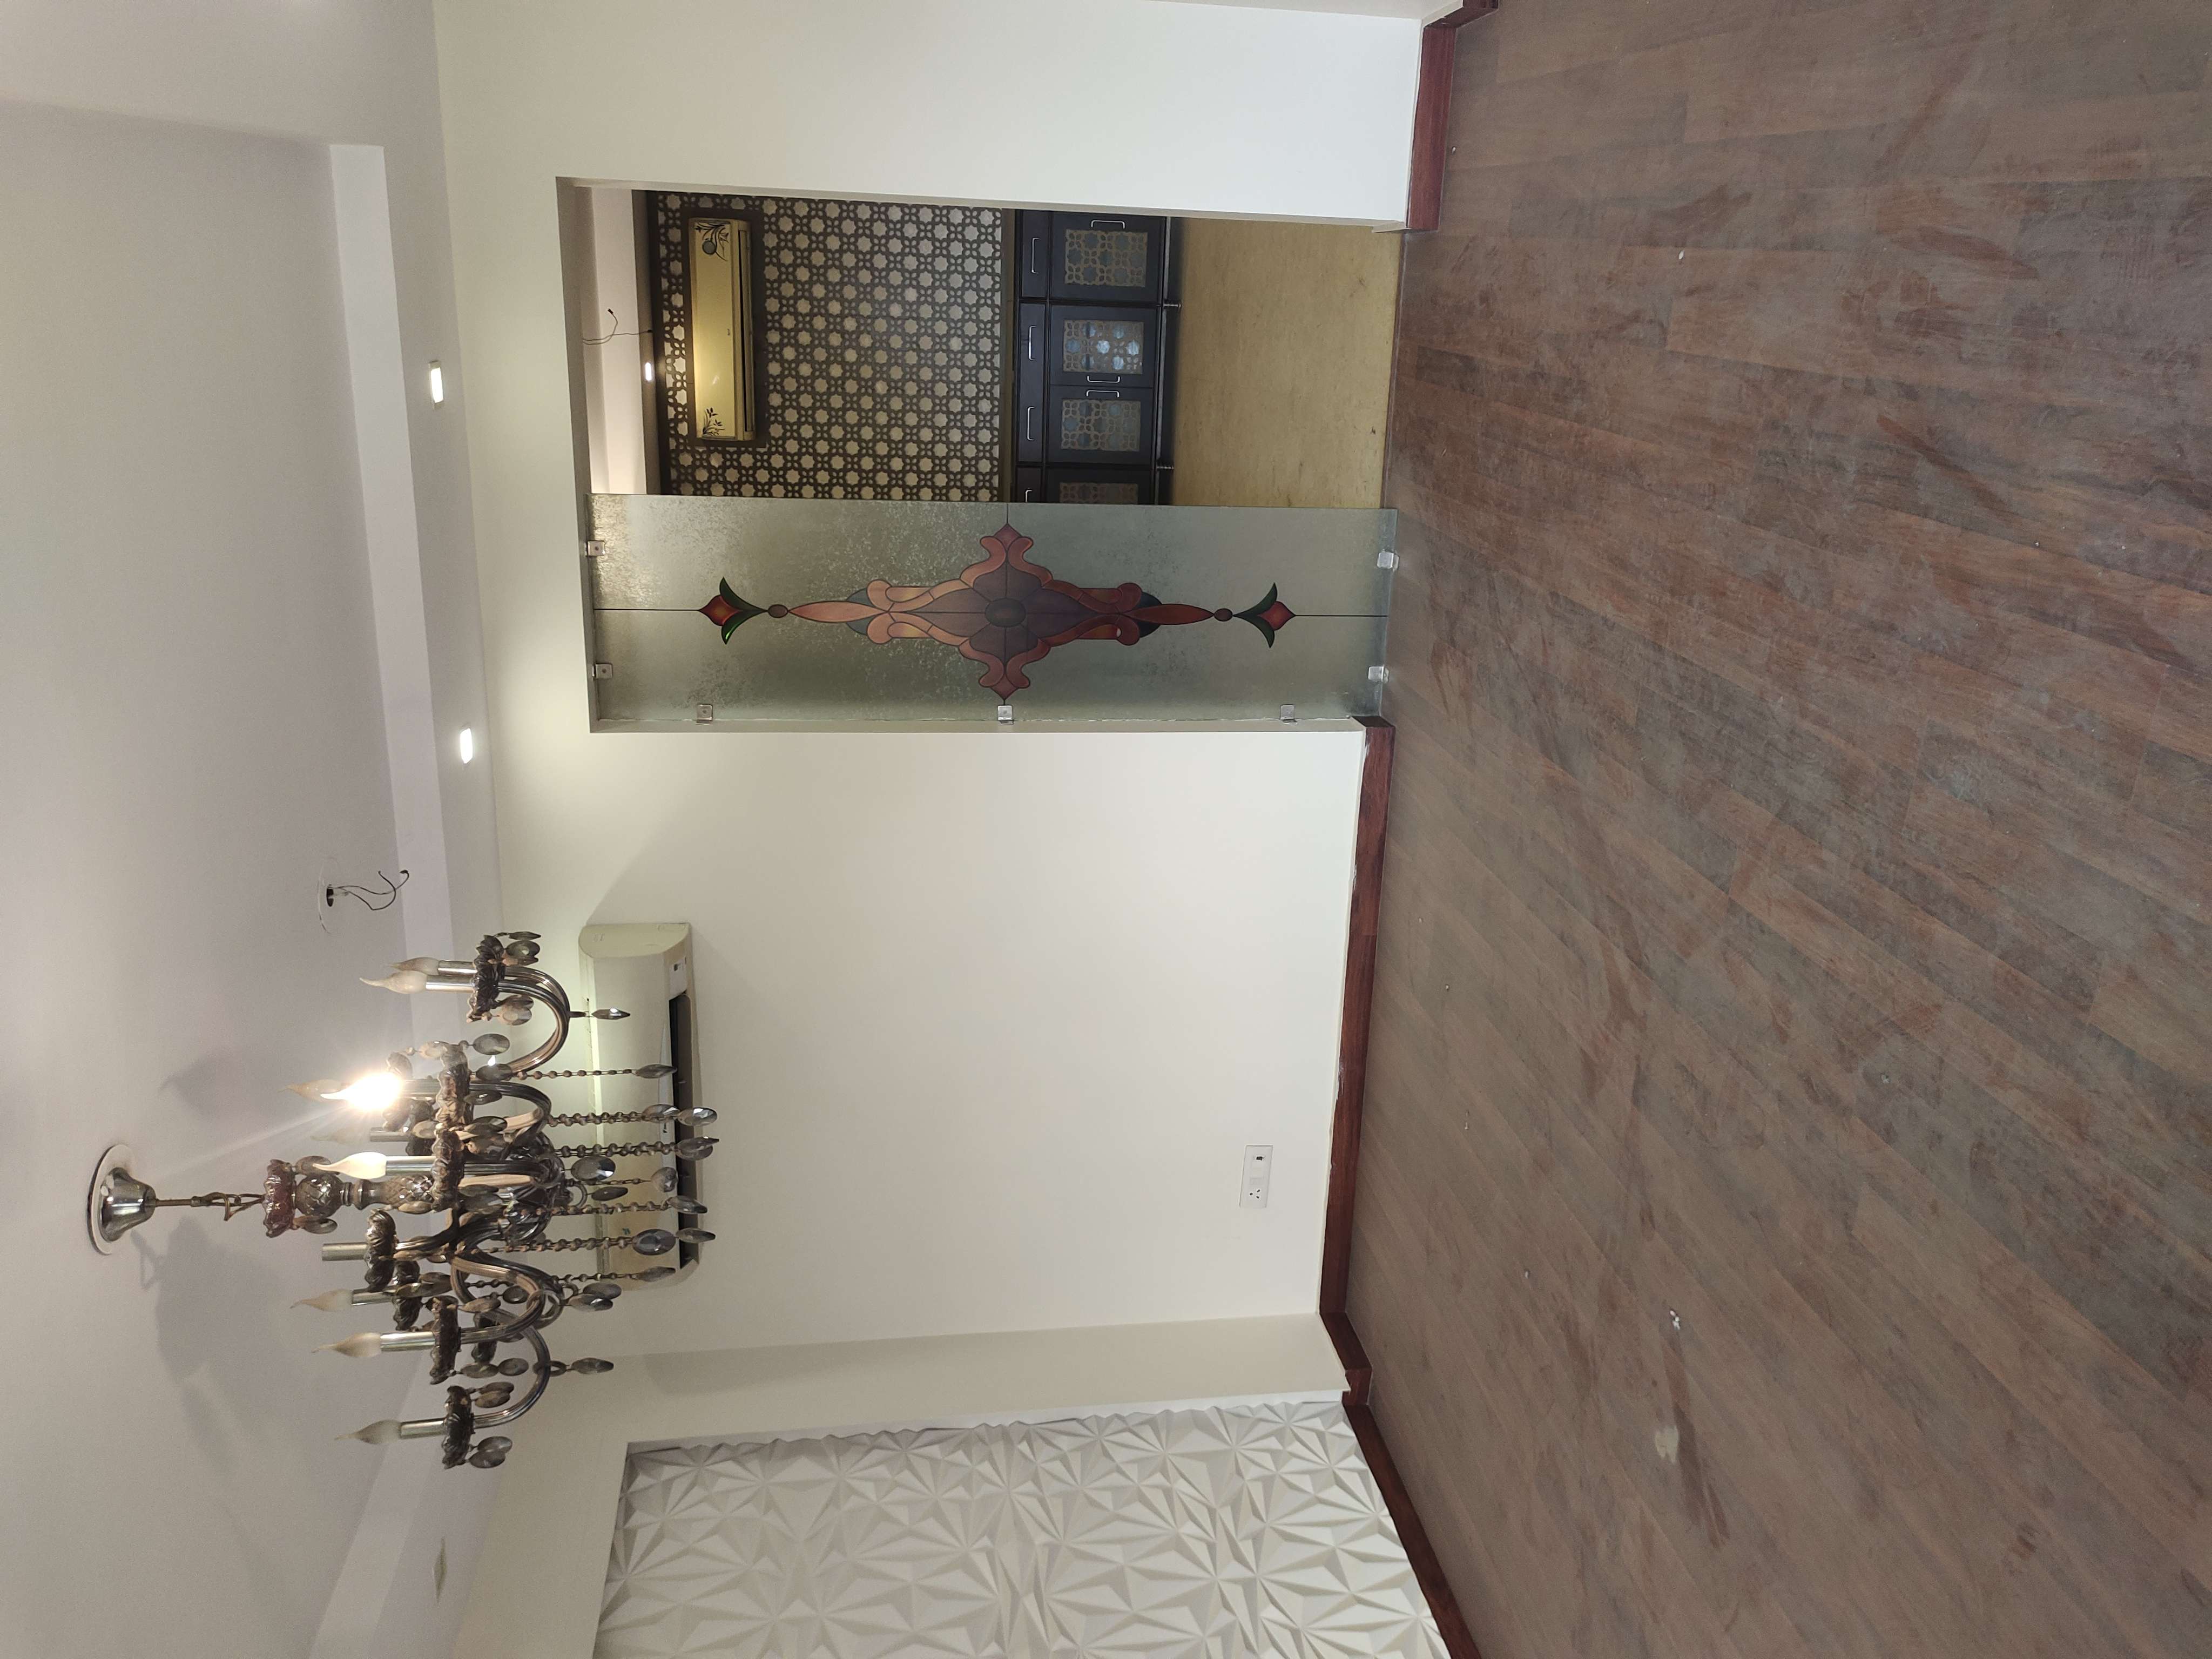 4 BHK Builder Floor For Rent in Kirti Nagar Delhi 6611452